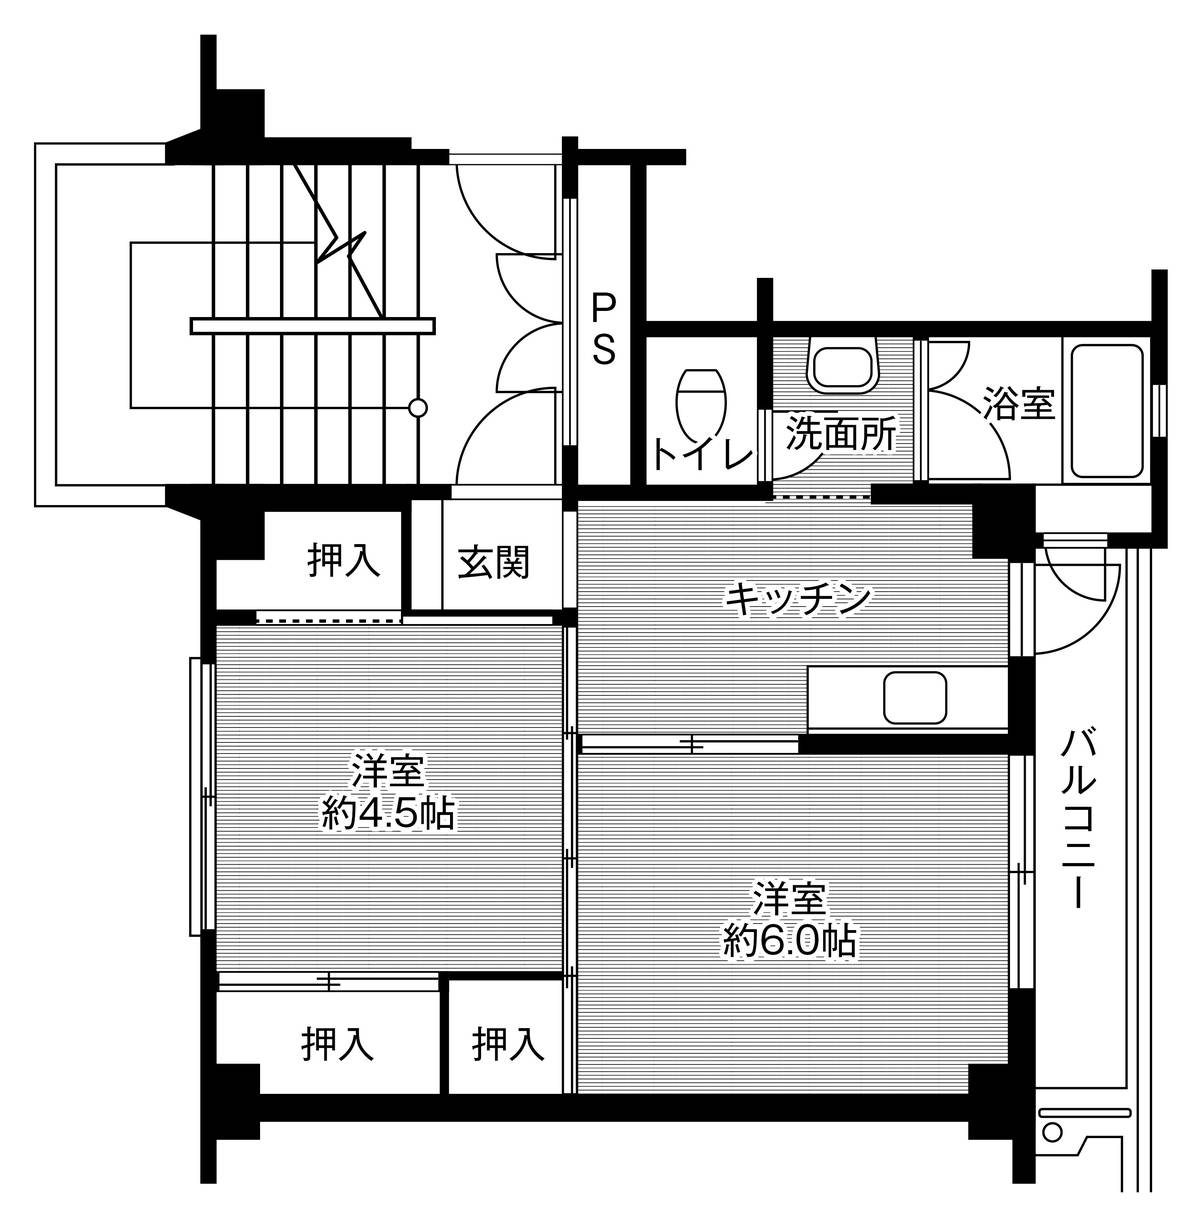 Sơ đồ phòng 2K của Village House Oku ở Setochi-shi